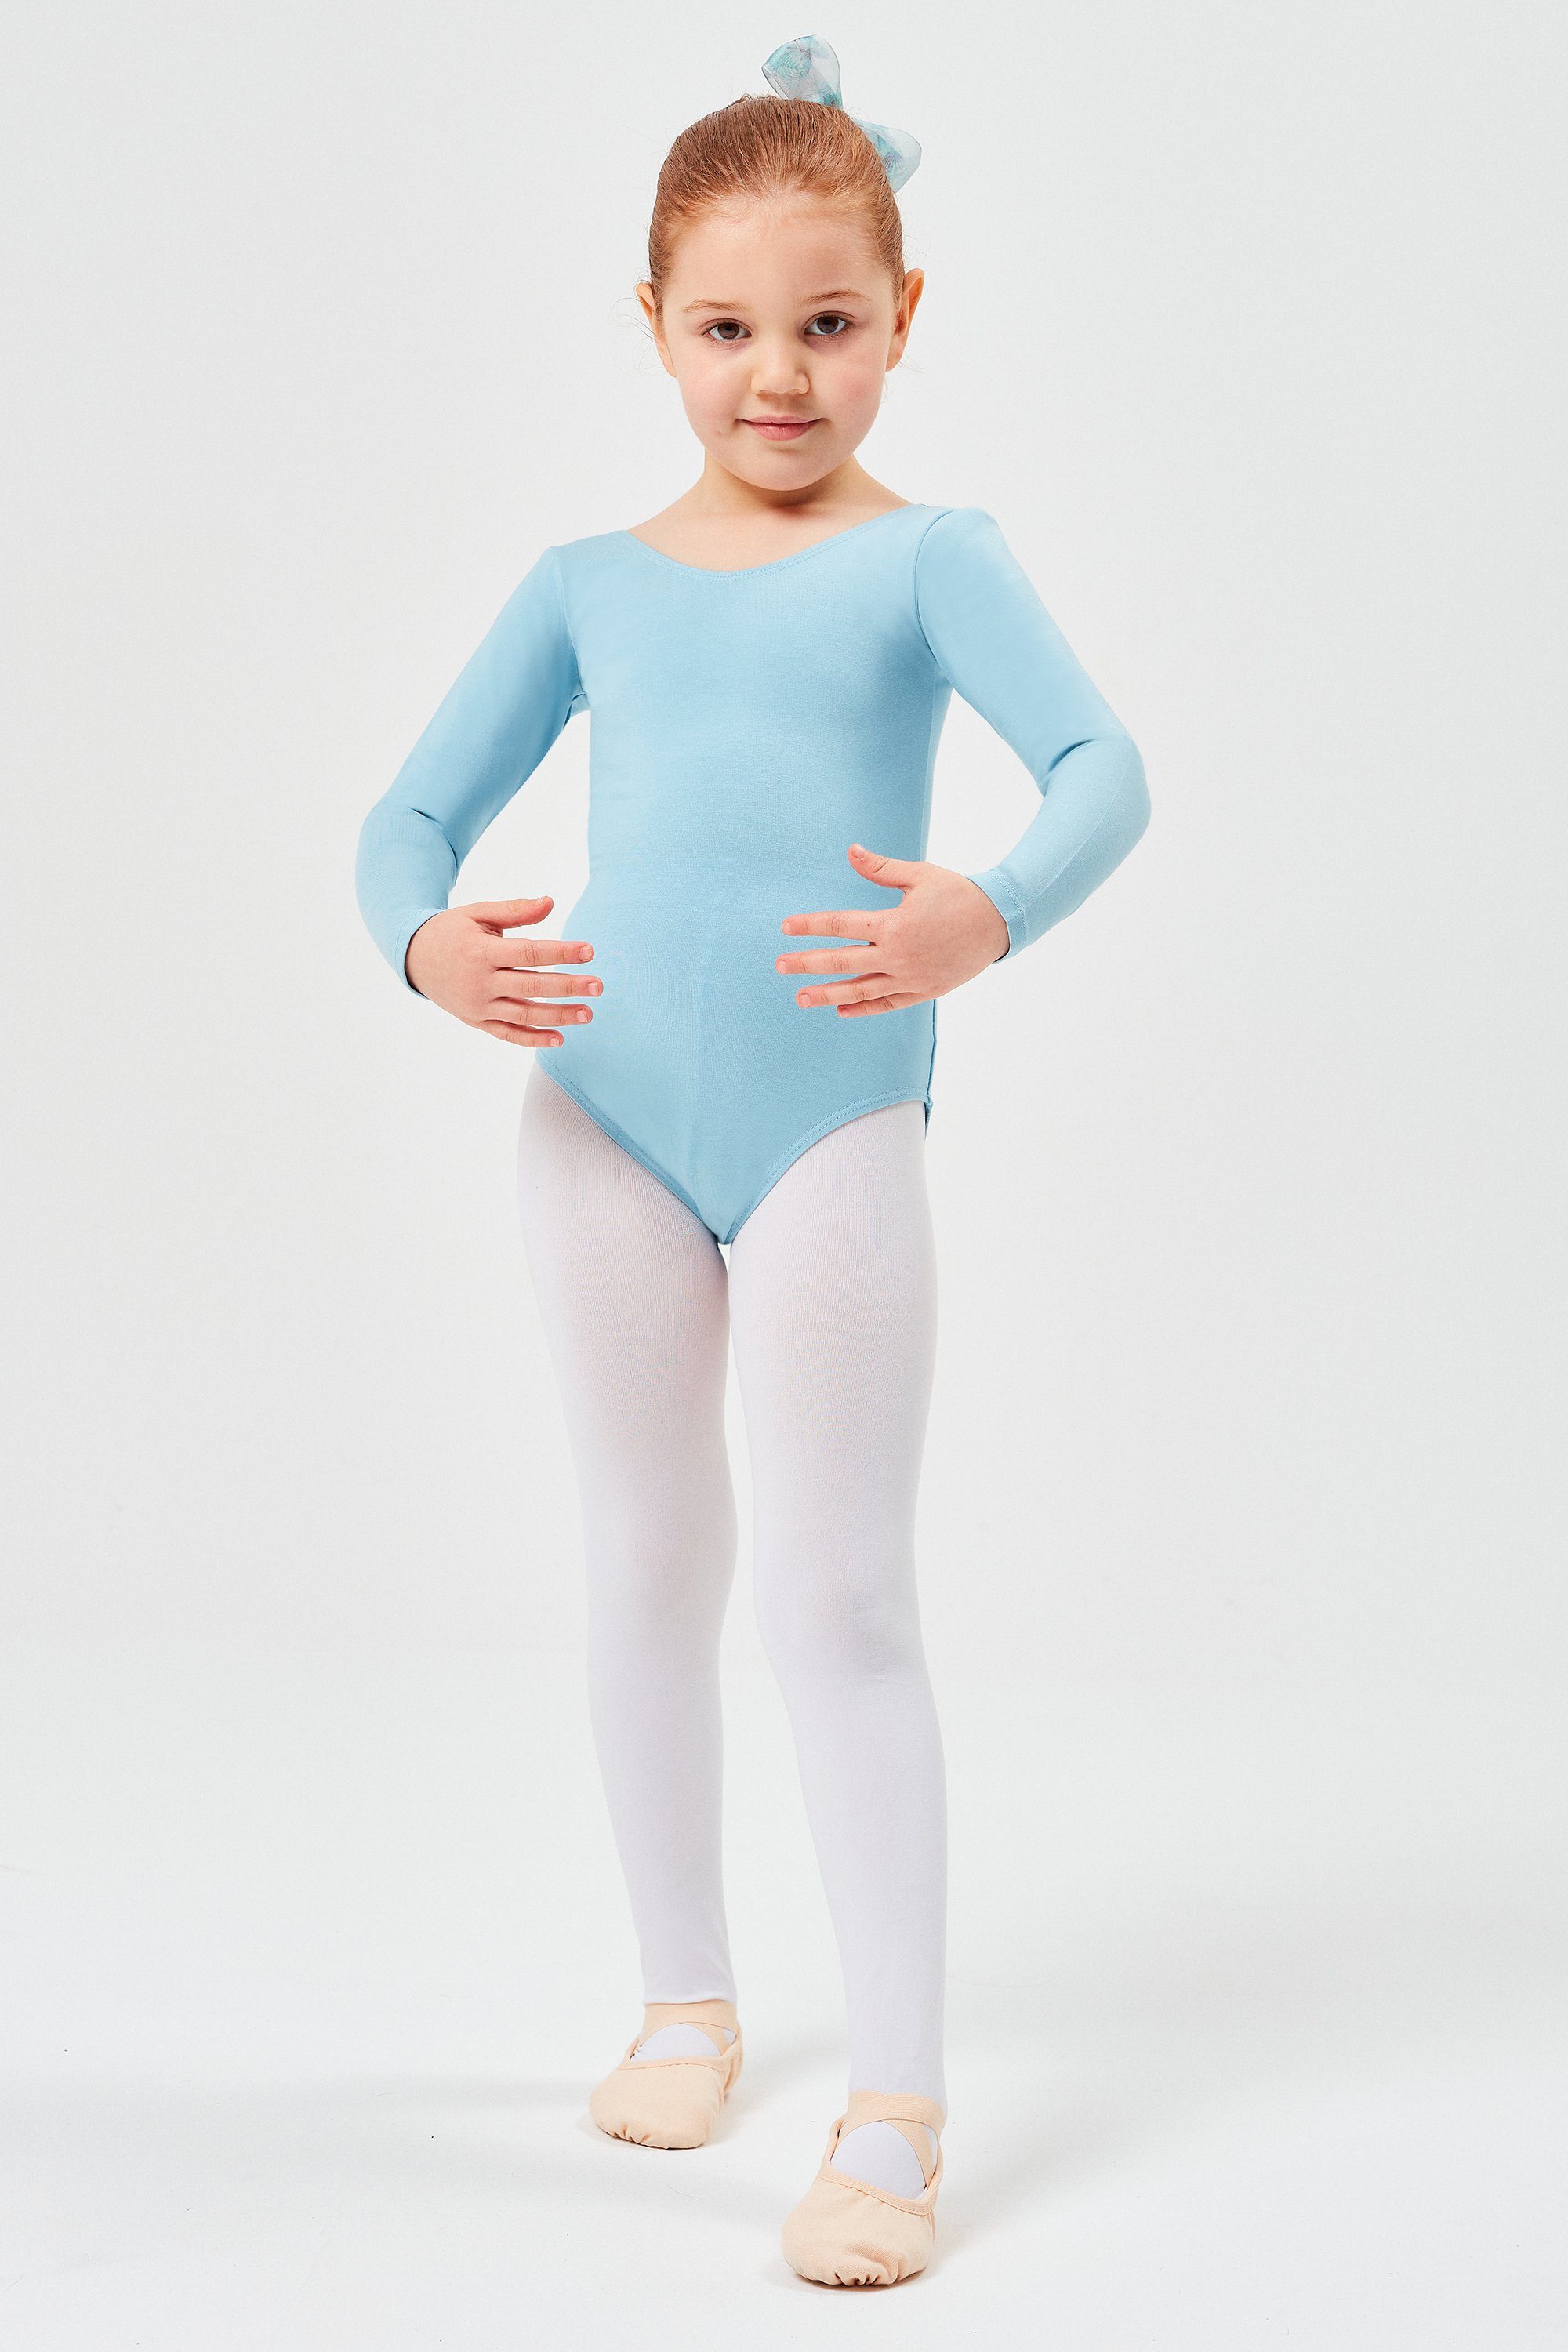 tanzmuster Body Ballettbody Lilly aus weichem Kinder Langarm hellblau Baumwollmischgewebe Trikot Ballett fürs